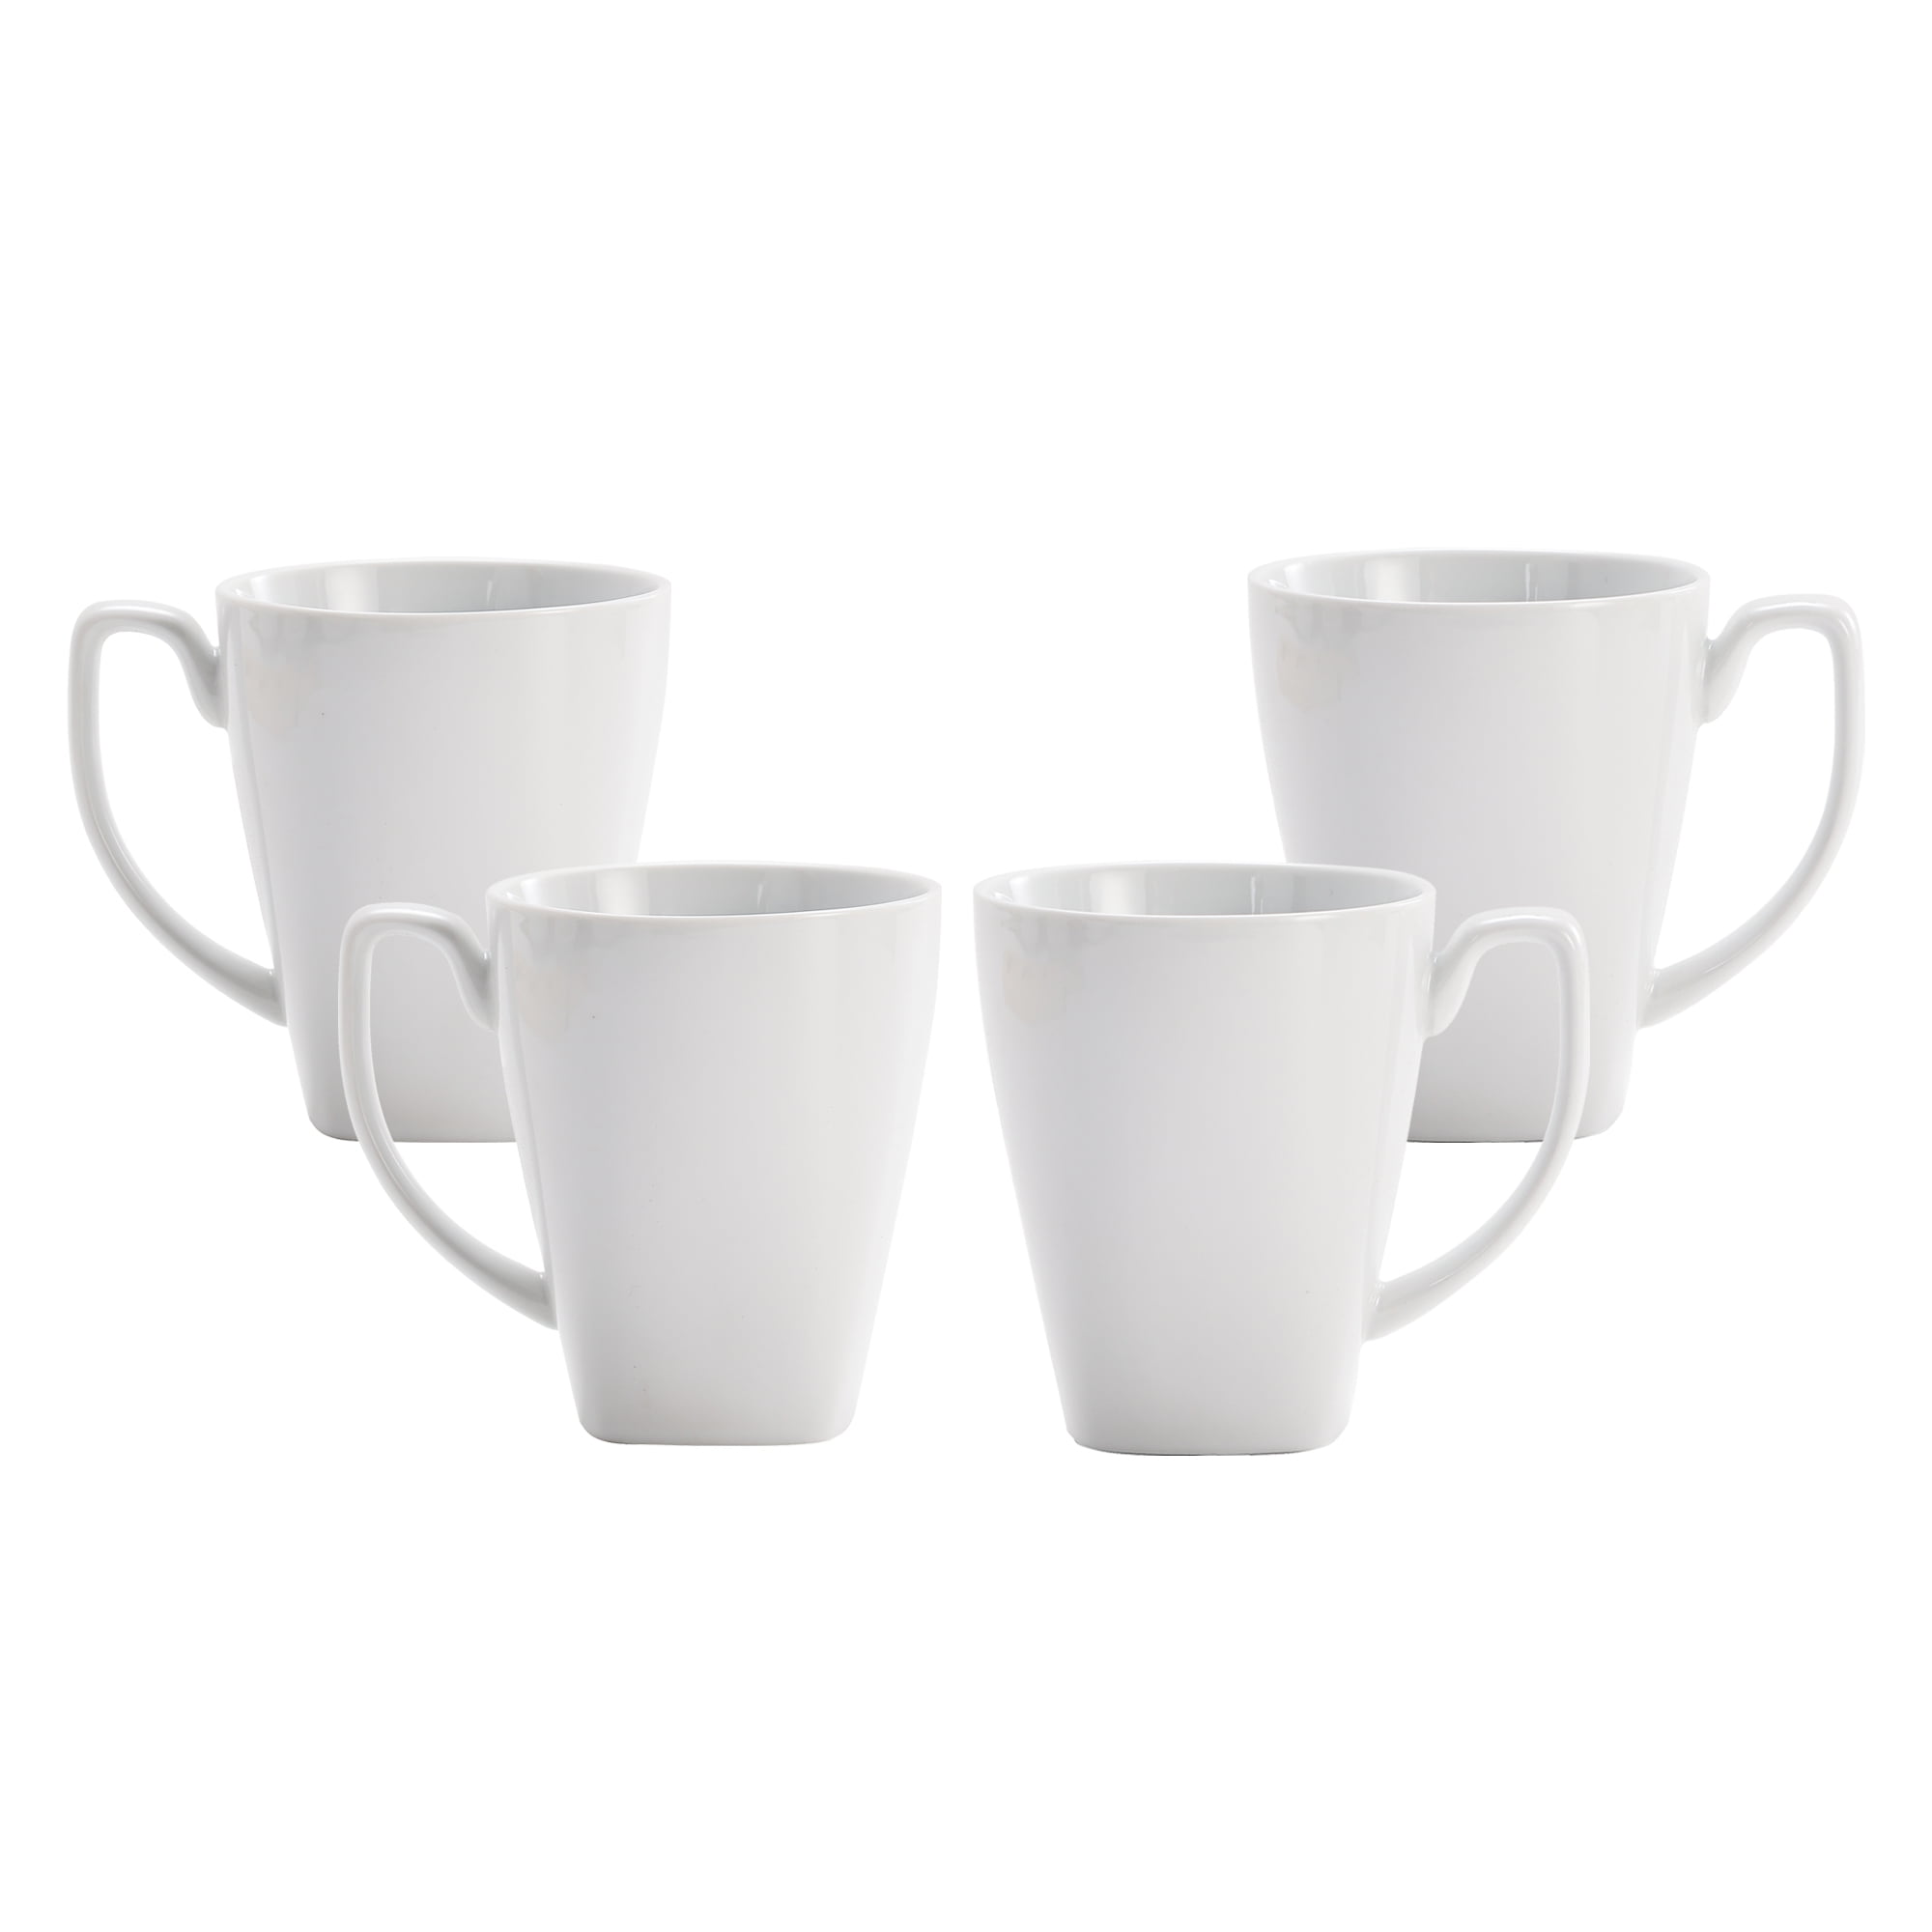 Bico White Porcelain Ceramic Mugs, 12oz, Set of 4, for Coffee, Tea ...